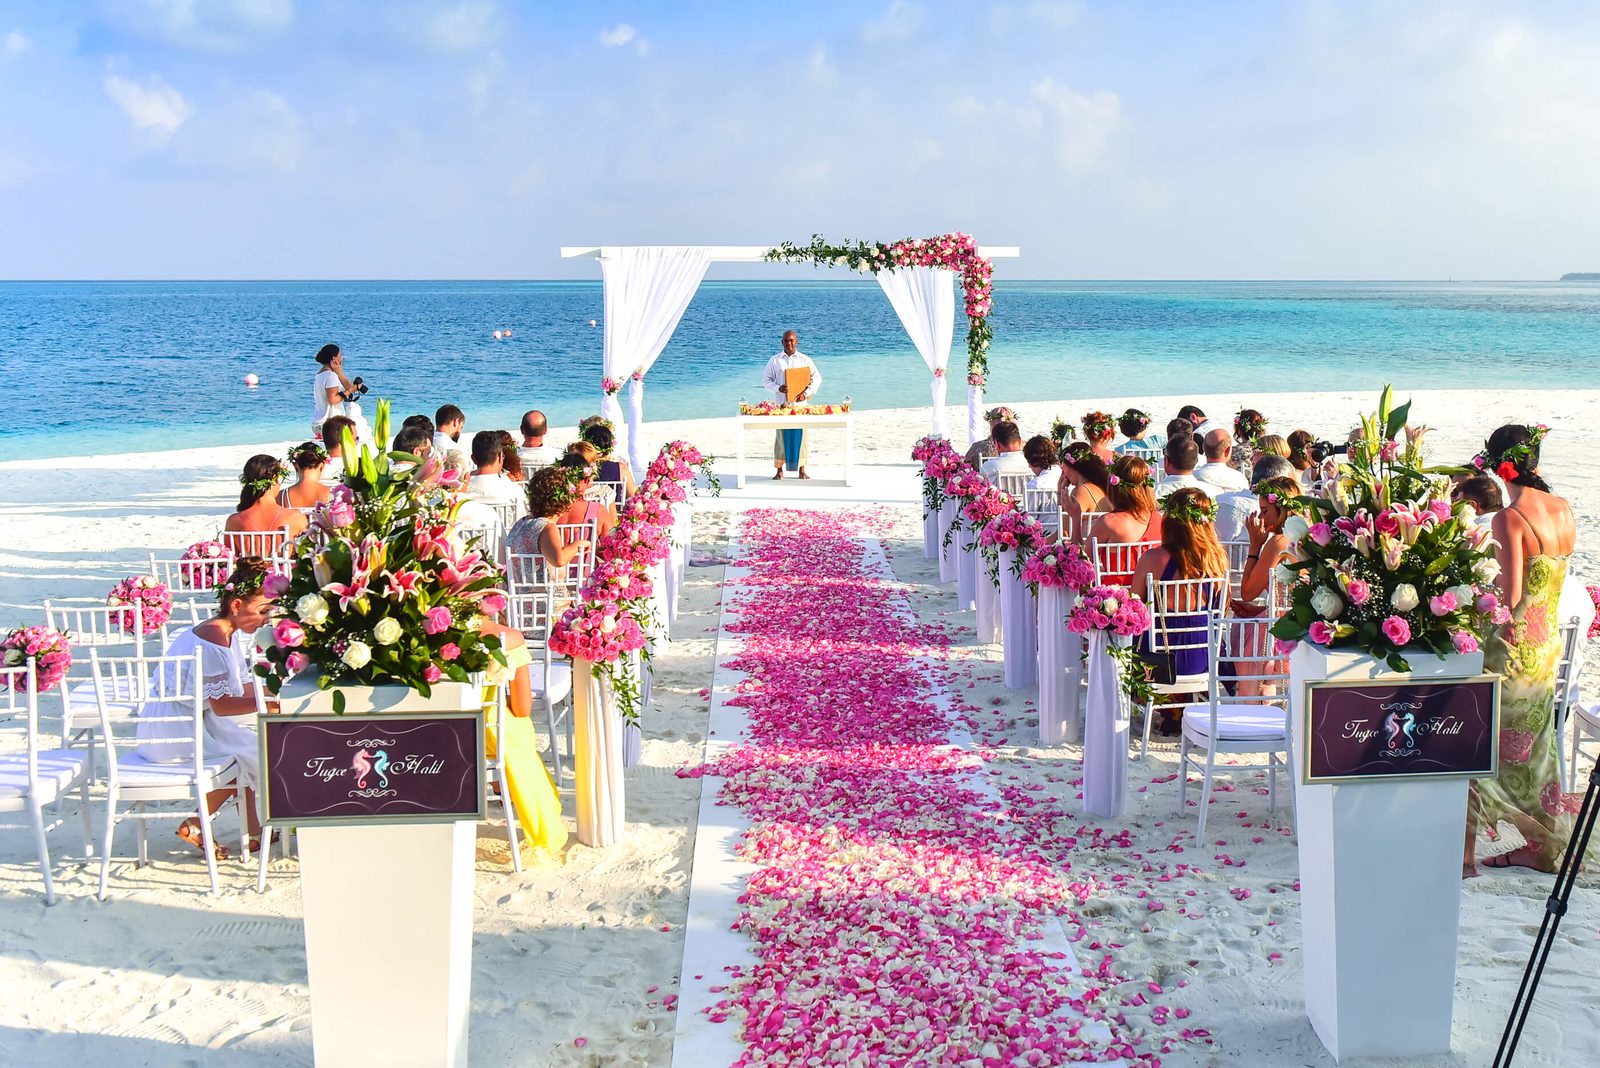 Un mariage à Bonaire est le rêve de beaucoup de couples ! Qui ne voudrait pas épouser l'amour de sa vie sur une île aussi belle et ensoleillée que Bonaire ?